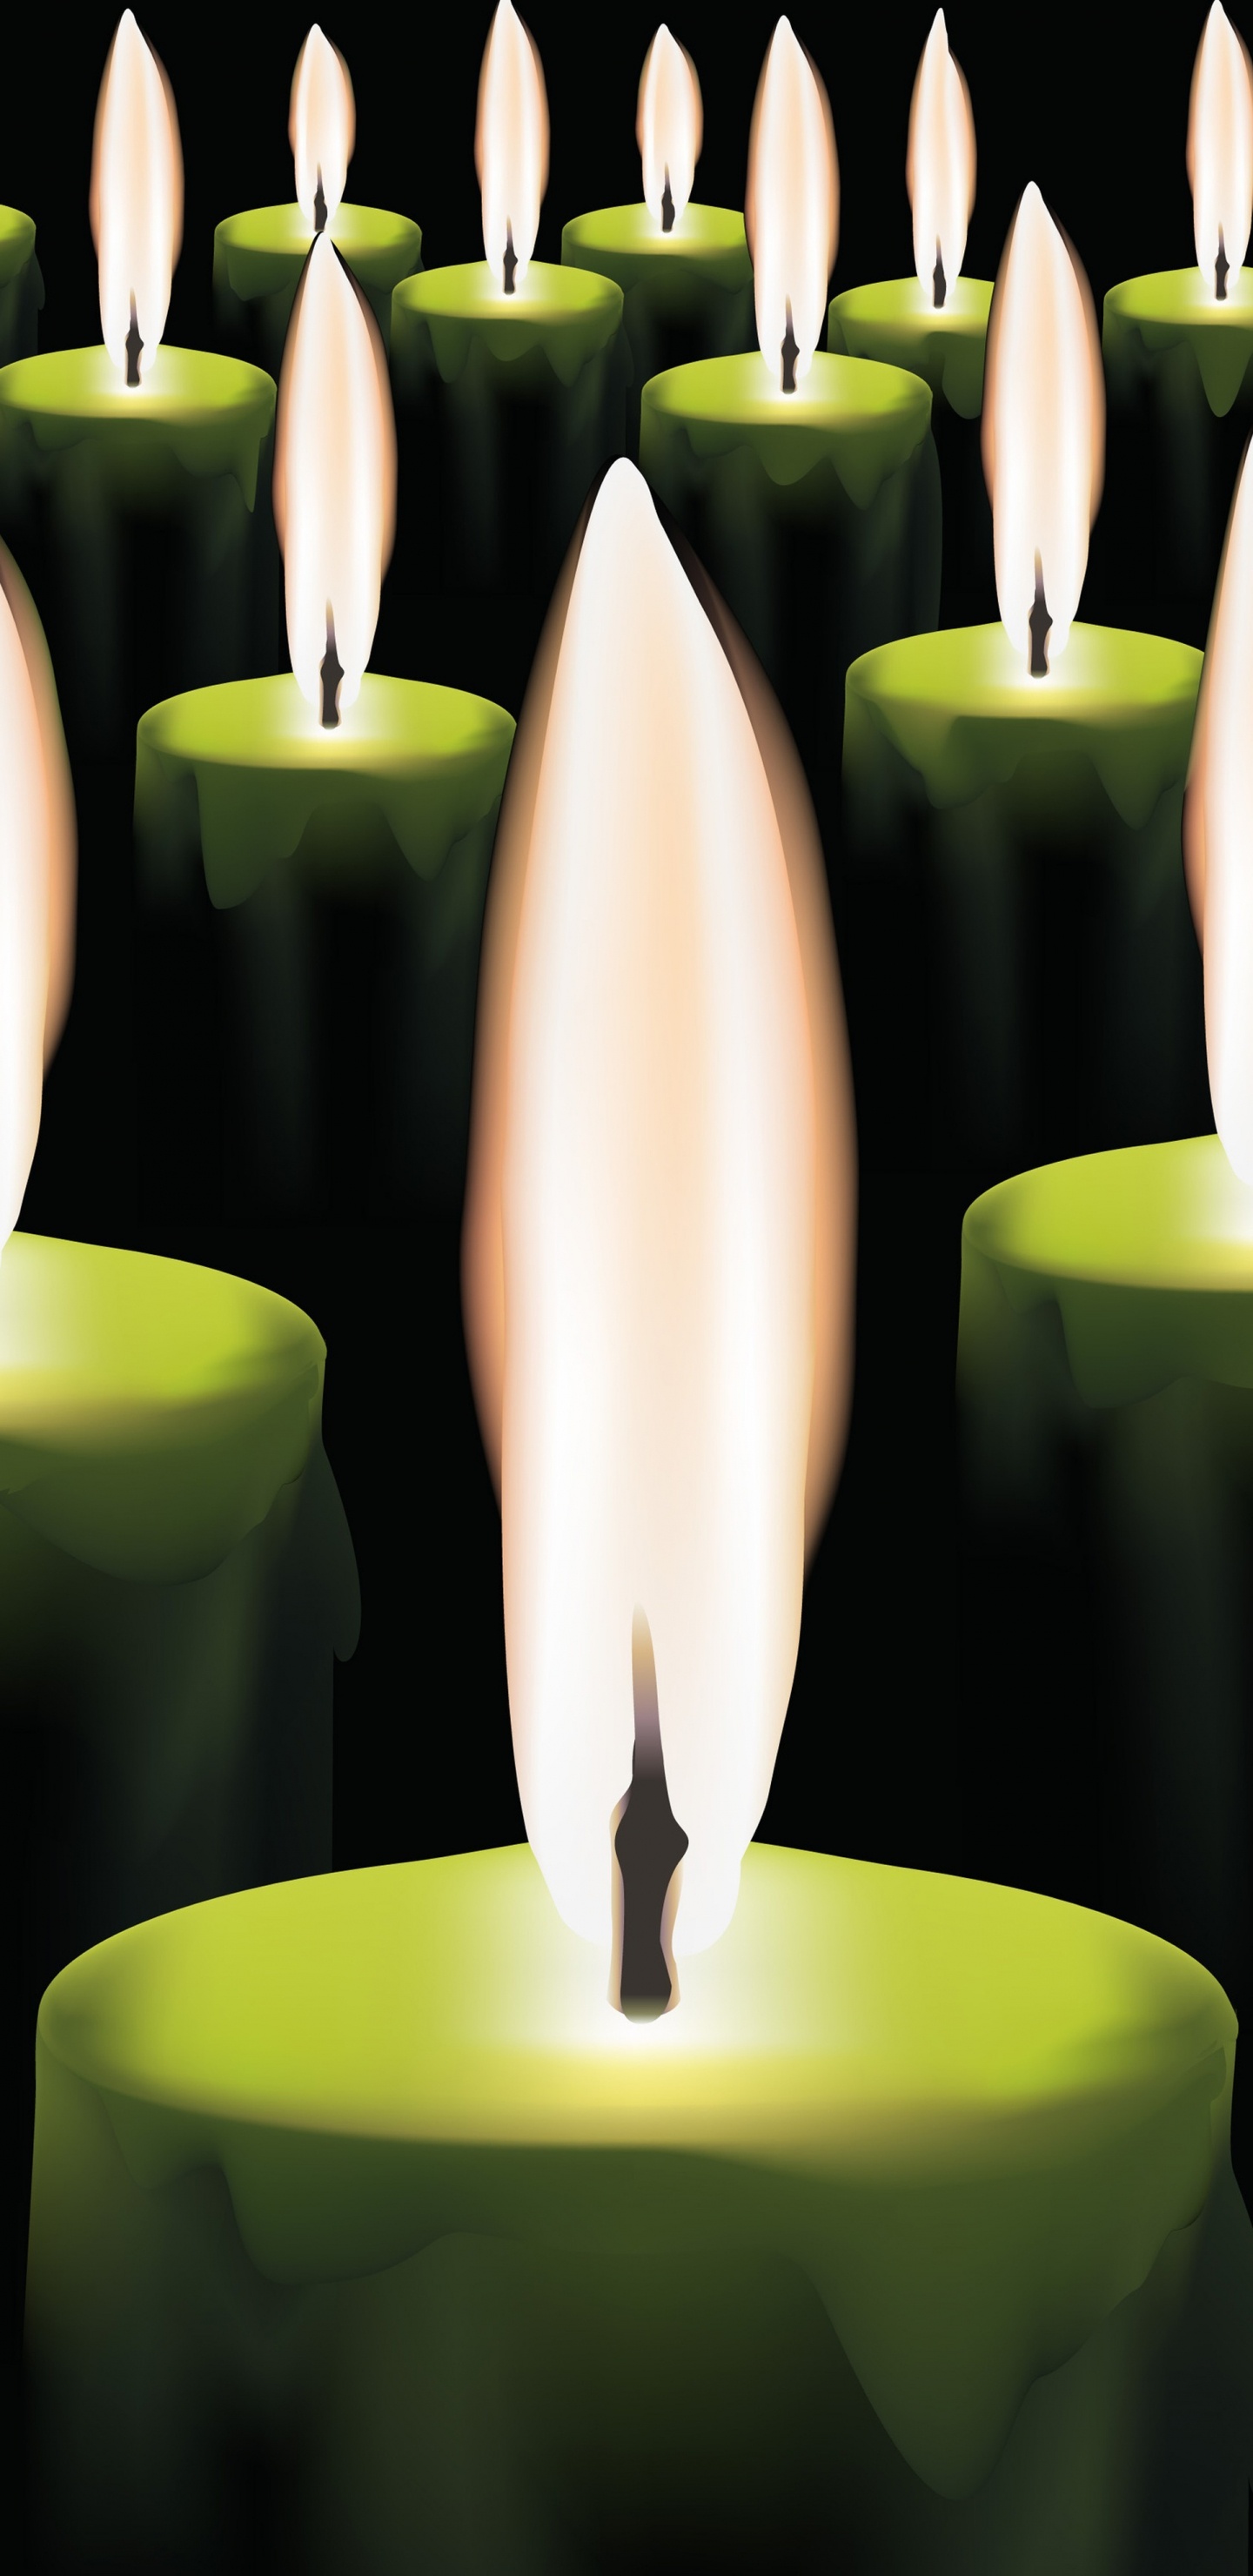 Brennende Kerzen, Kerze, Flamme, Licht, Wachs. Wallpaper in 1440x2960 Resolution